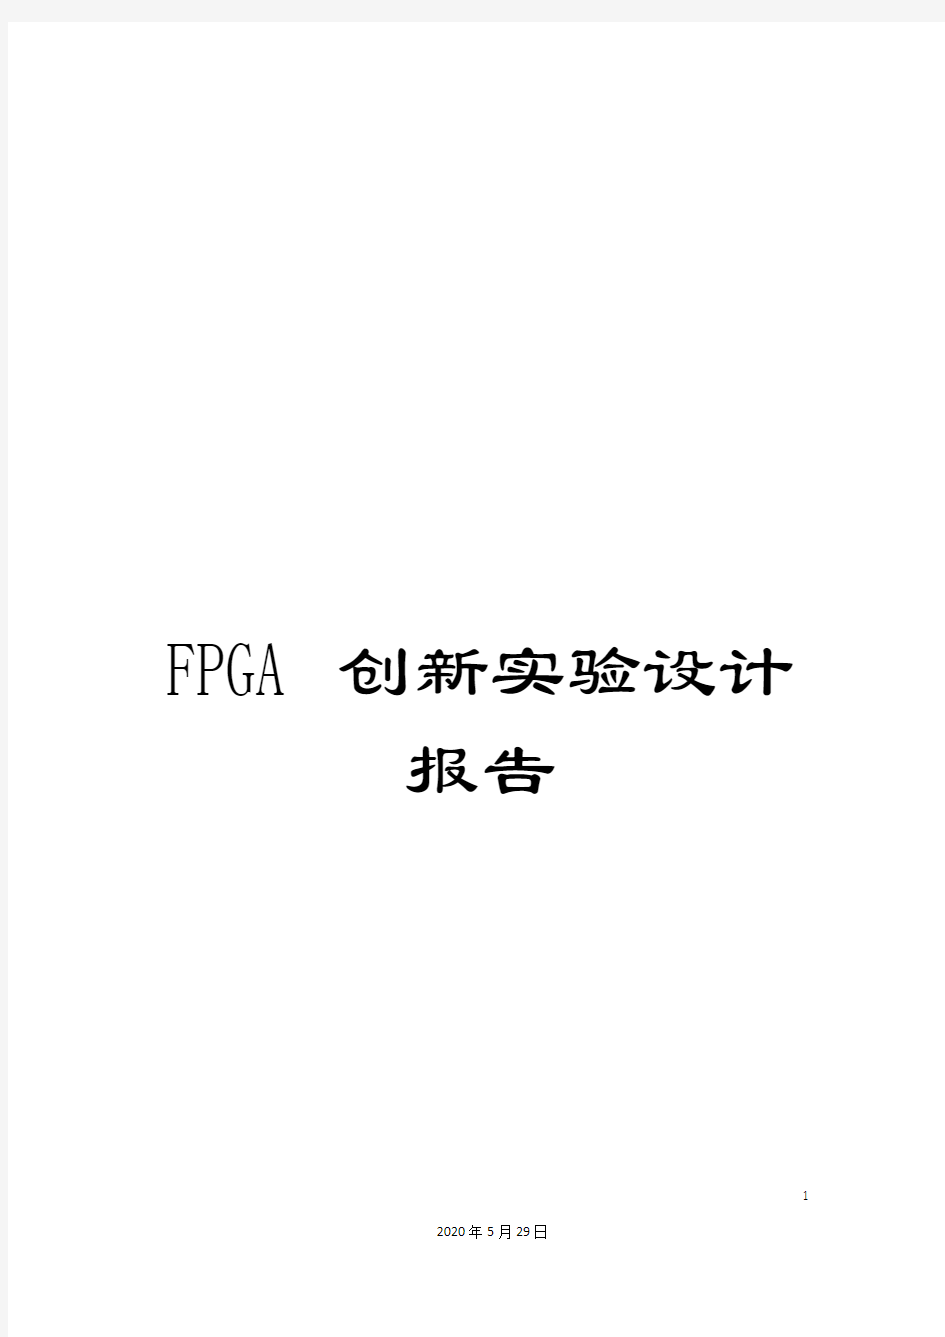 FPGA创新实验设计报告